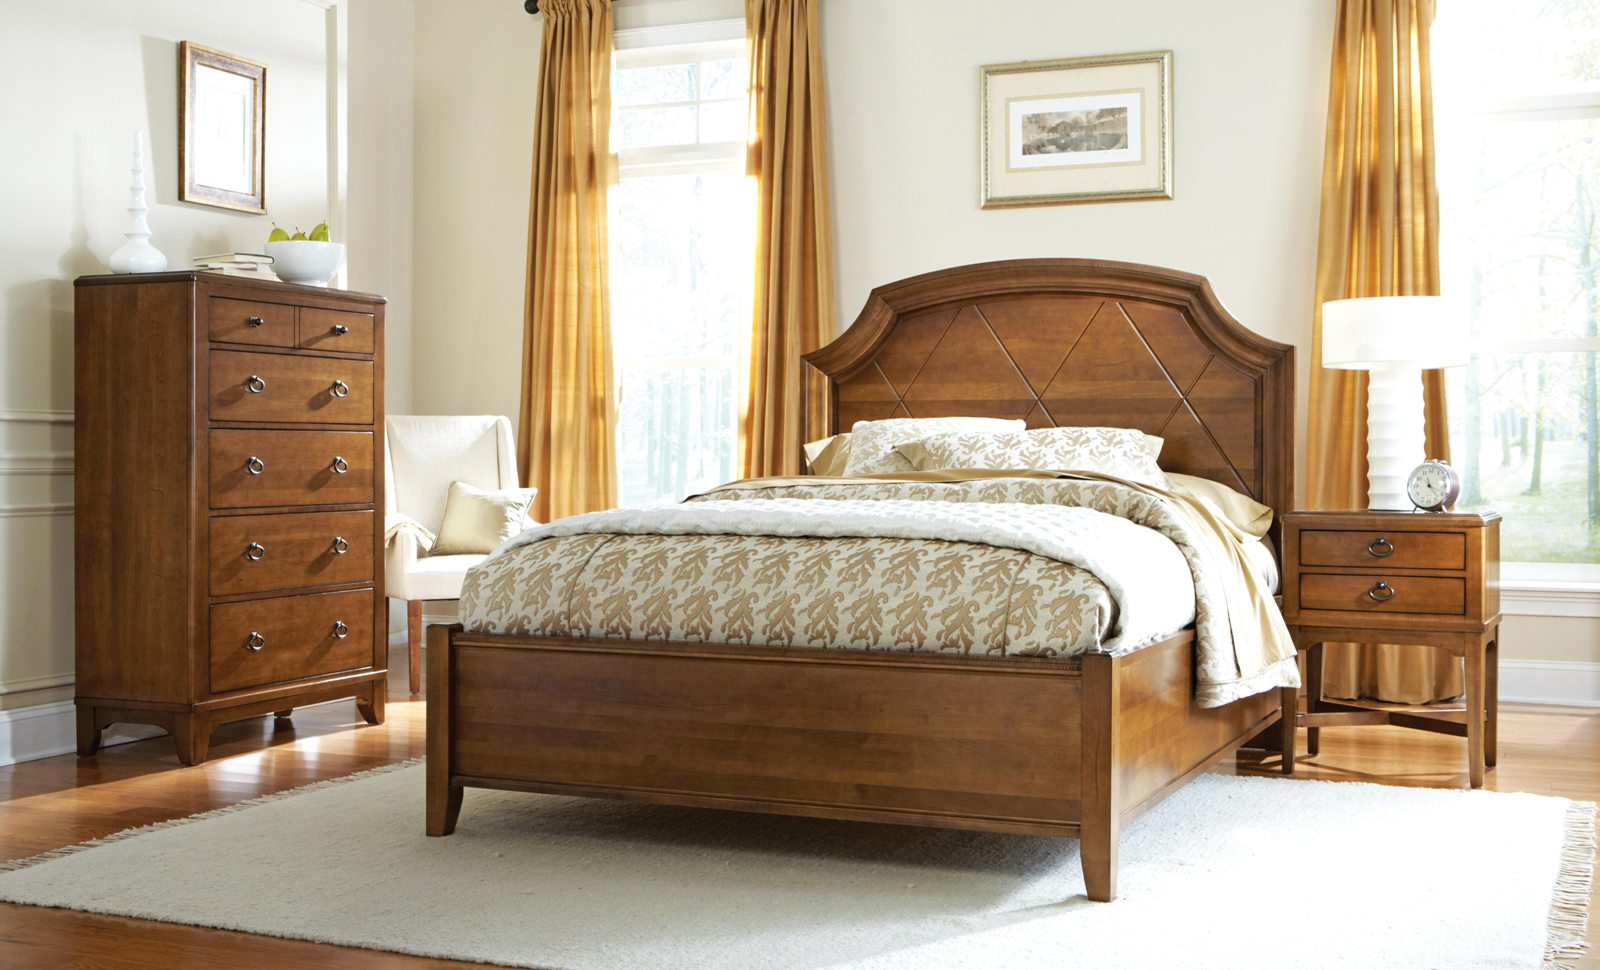 glen arbor bedroom furniture